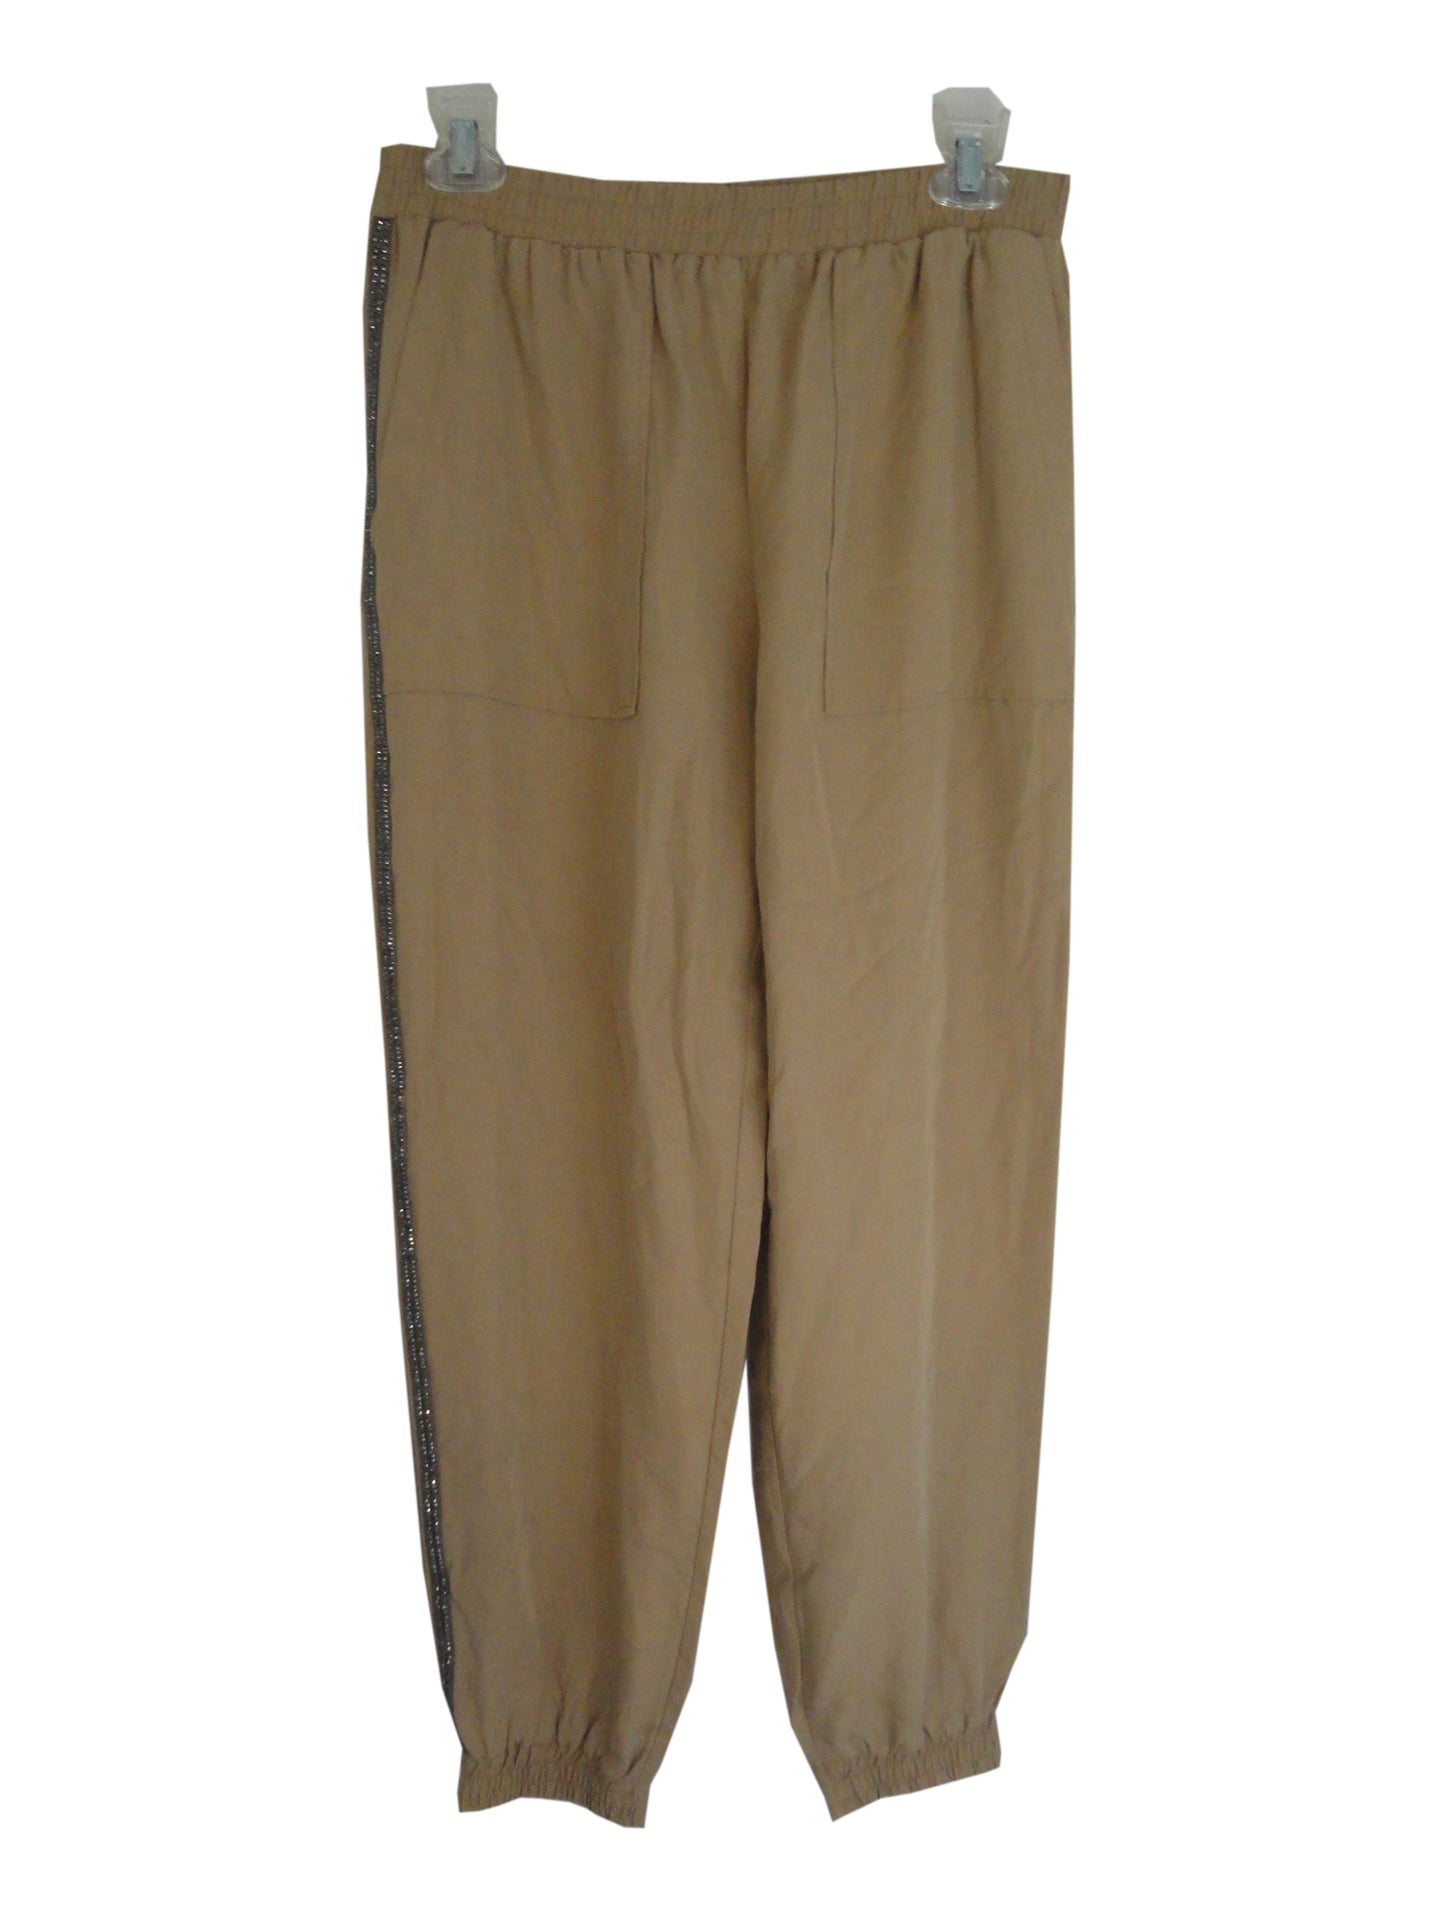 Zara Pants Tan Size Medium SKU 000170